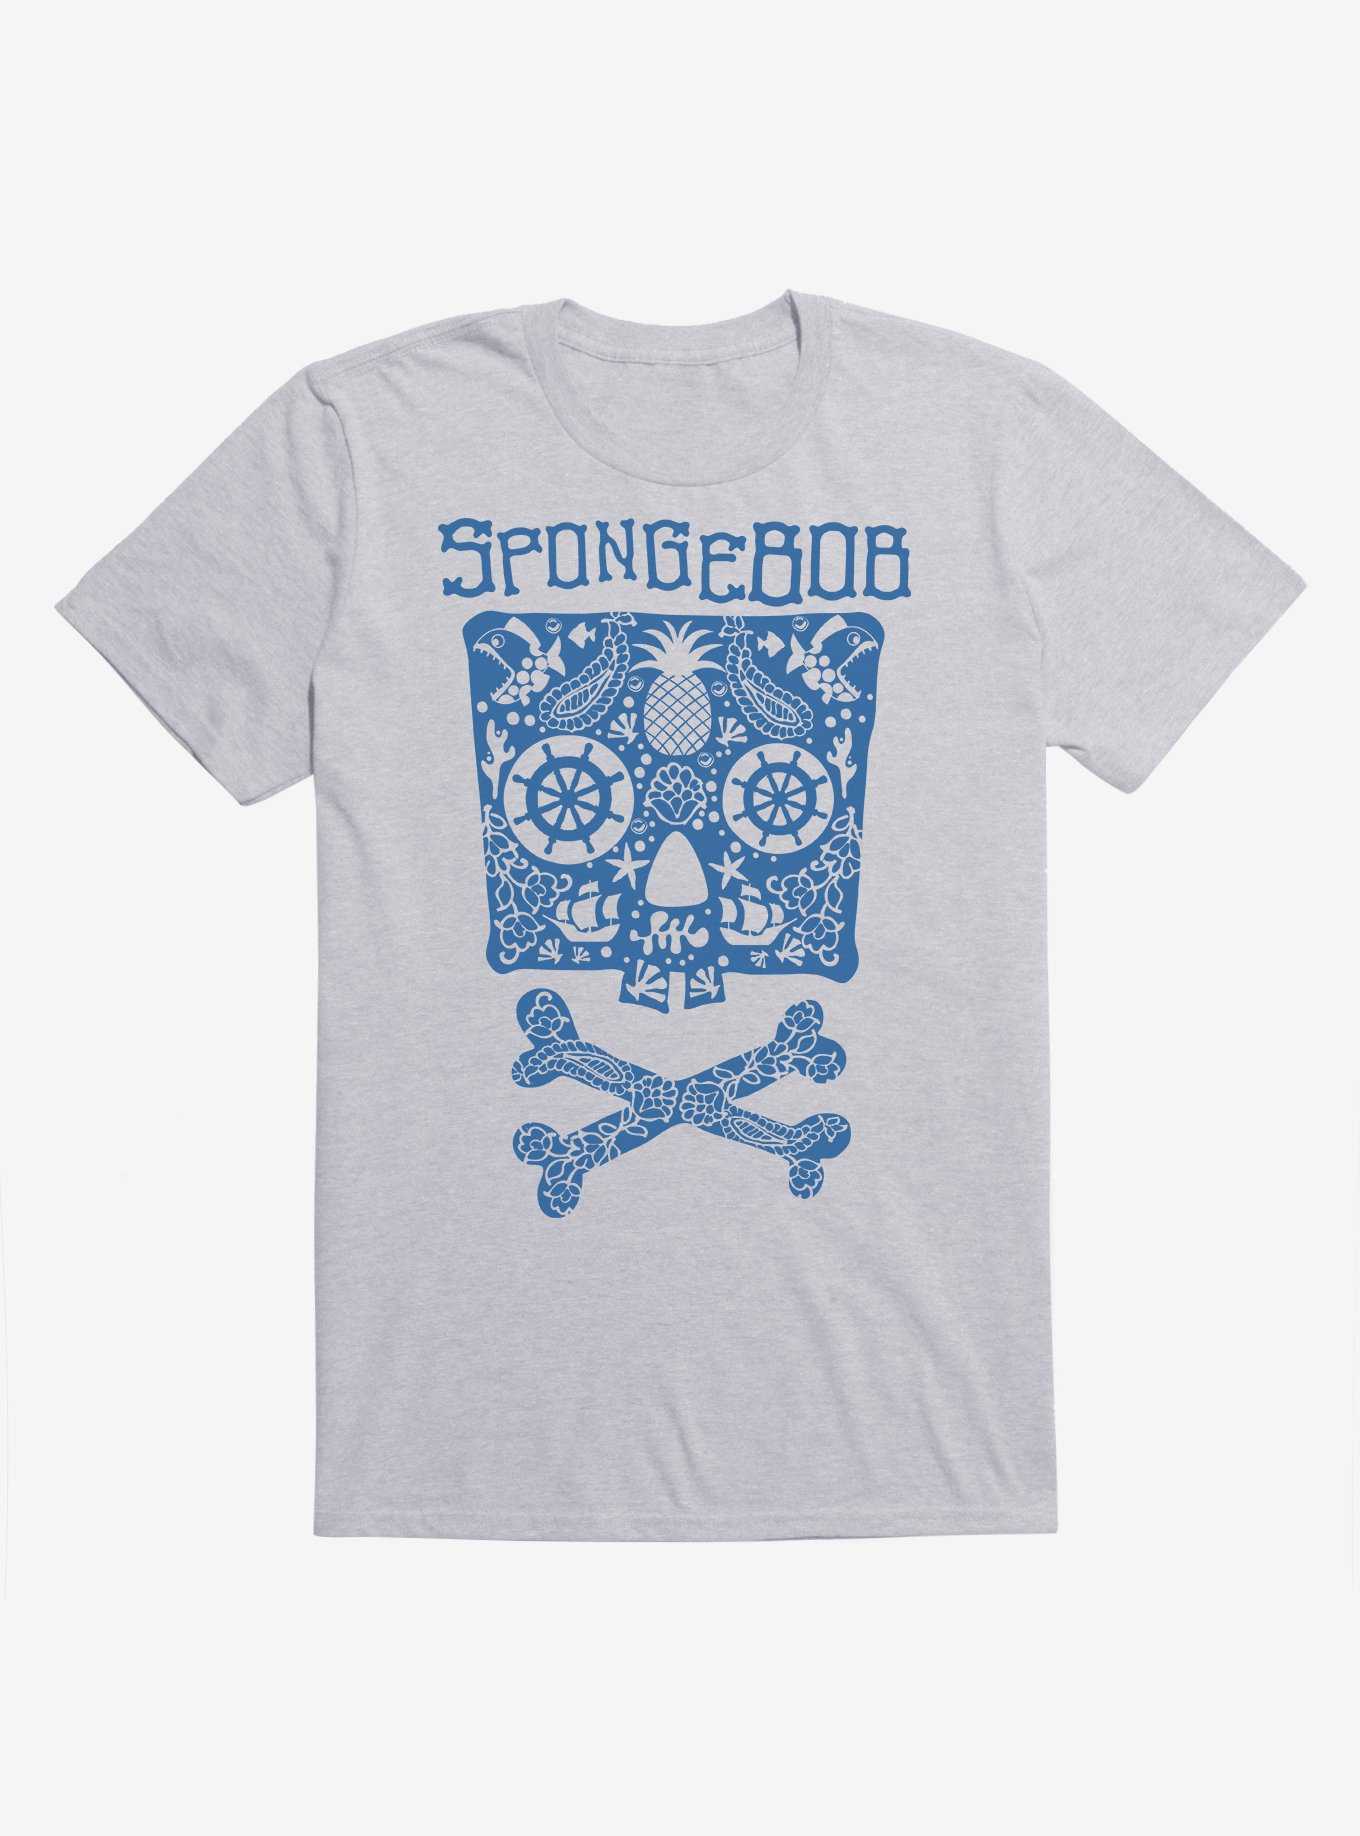 SpongeBob SquarePants Skulls And Bones SpongeBob T-Shirt, , hi-res